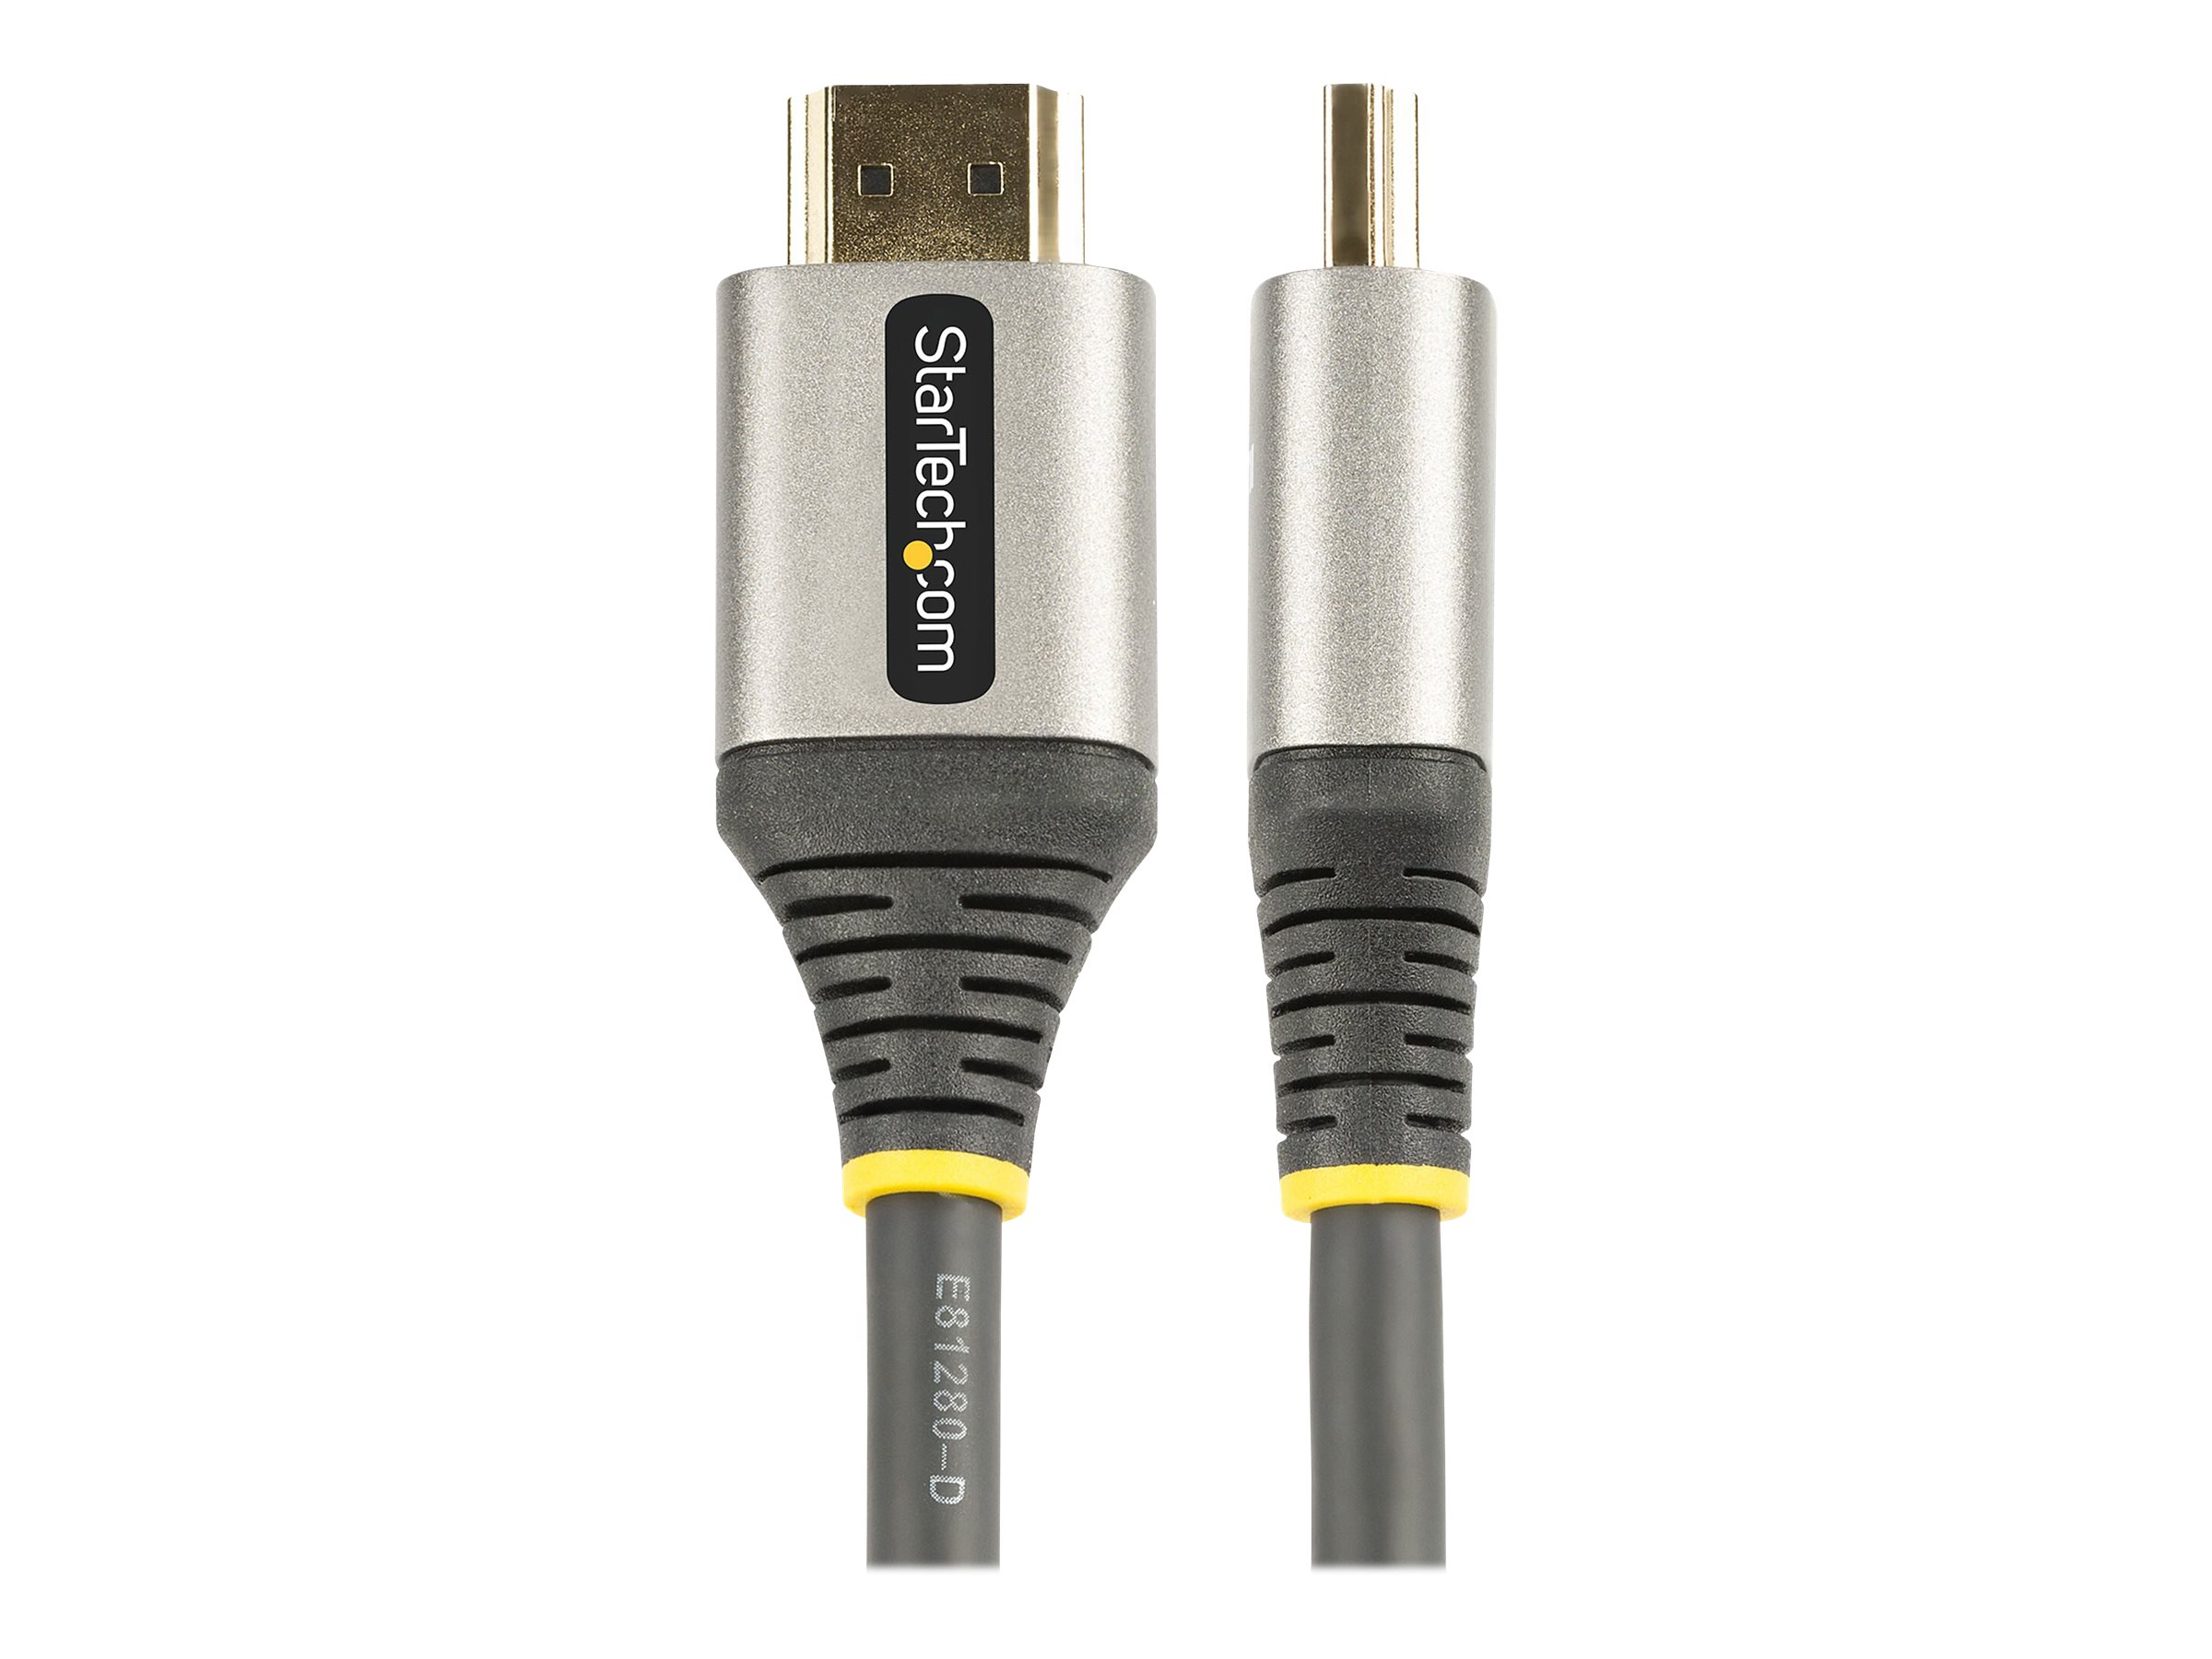 StarTech.com 2m Premium zertifiziertes HDMI 2.0 Kabel - High Speed Ultra HD 4K 60Hz HDMI Kabel mit Ethernet - HDR10, ARC - UHD HDMI Videokabel - Für UHD Monitore, TVs, Displays - M/M (HDMMV2M) - HDMI-Kabel mit Ethernet - 2 m